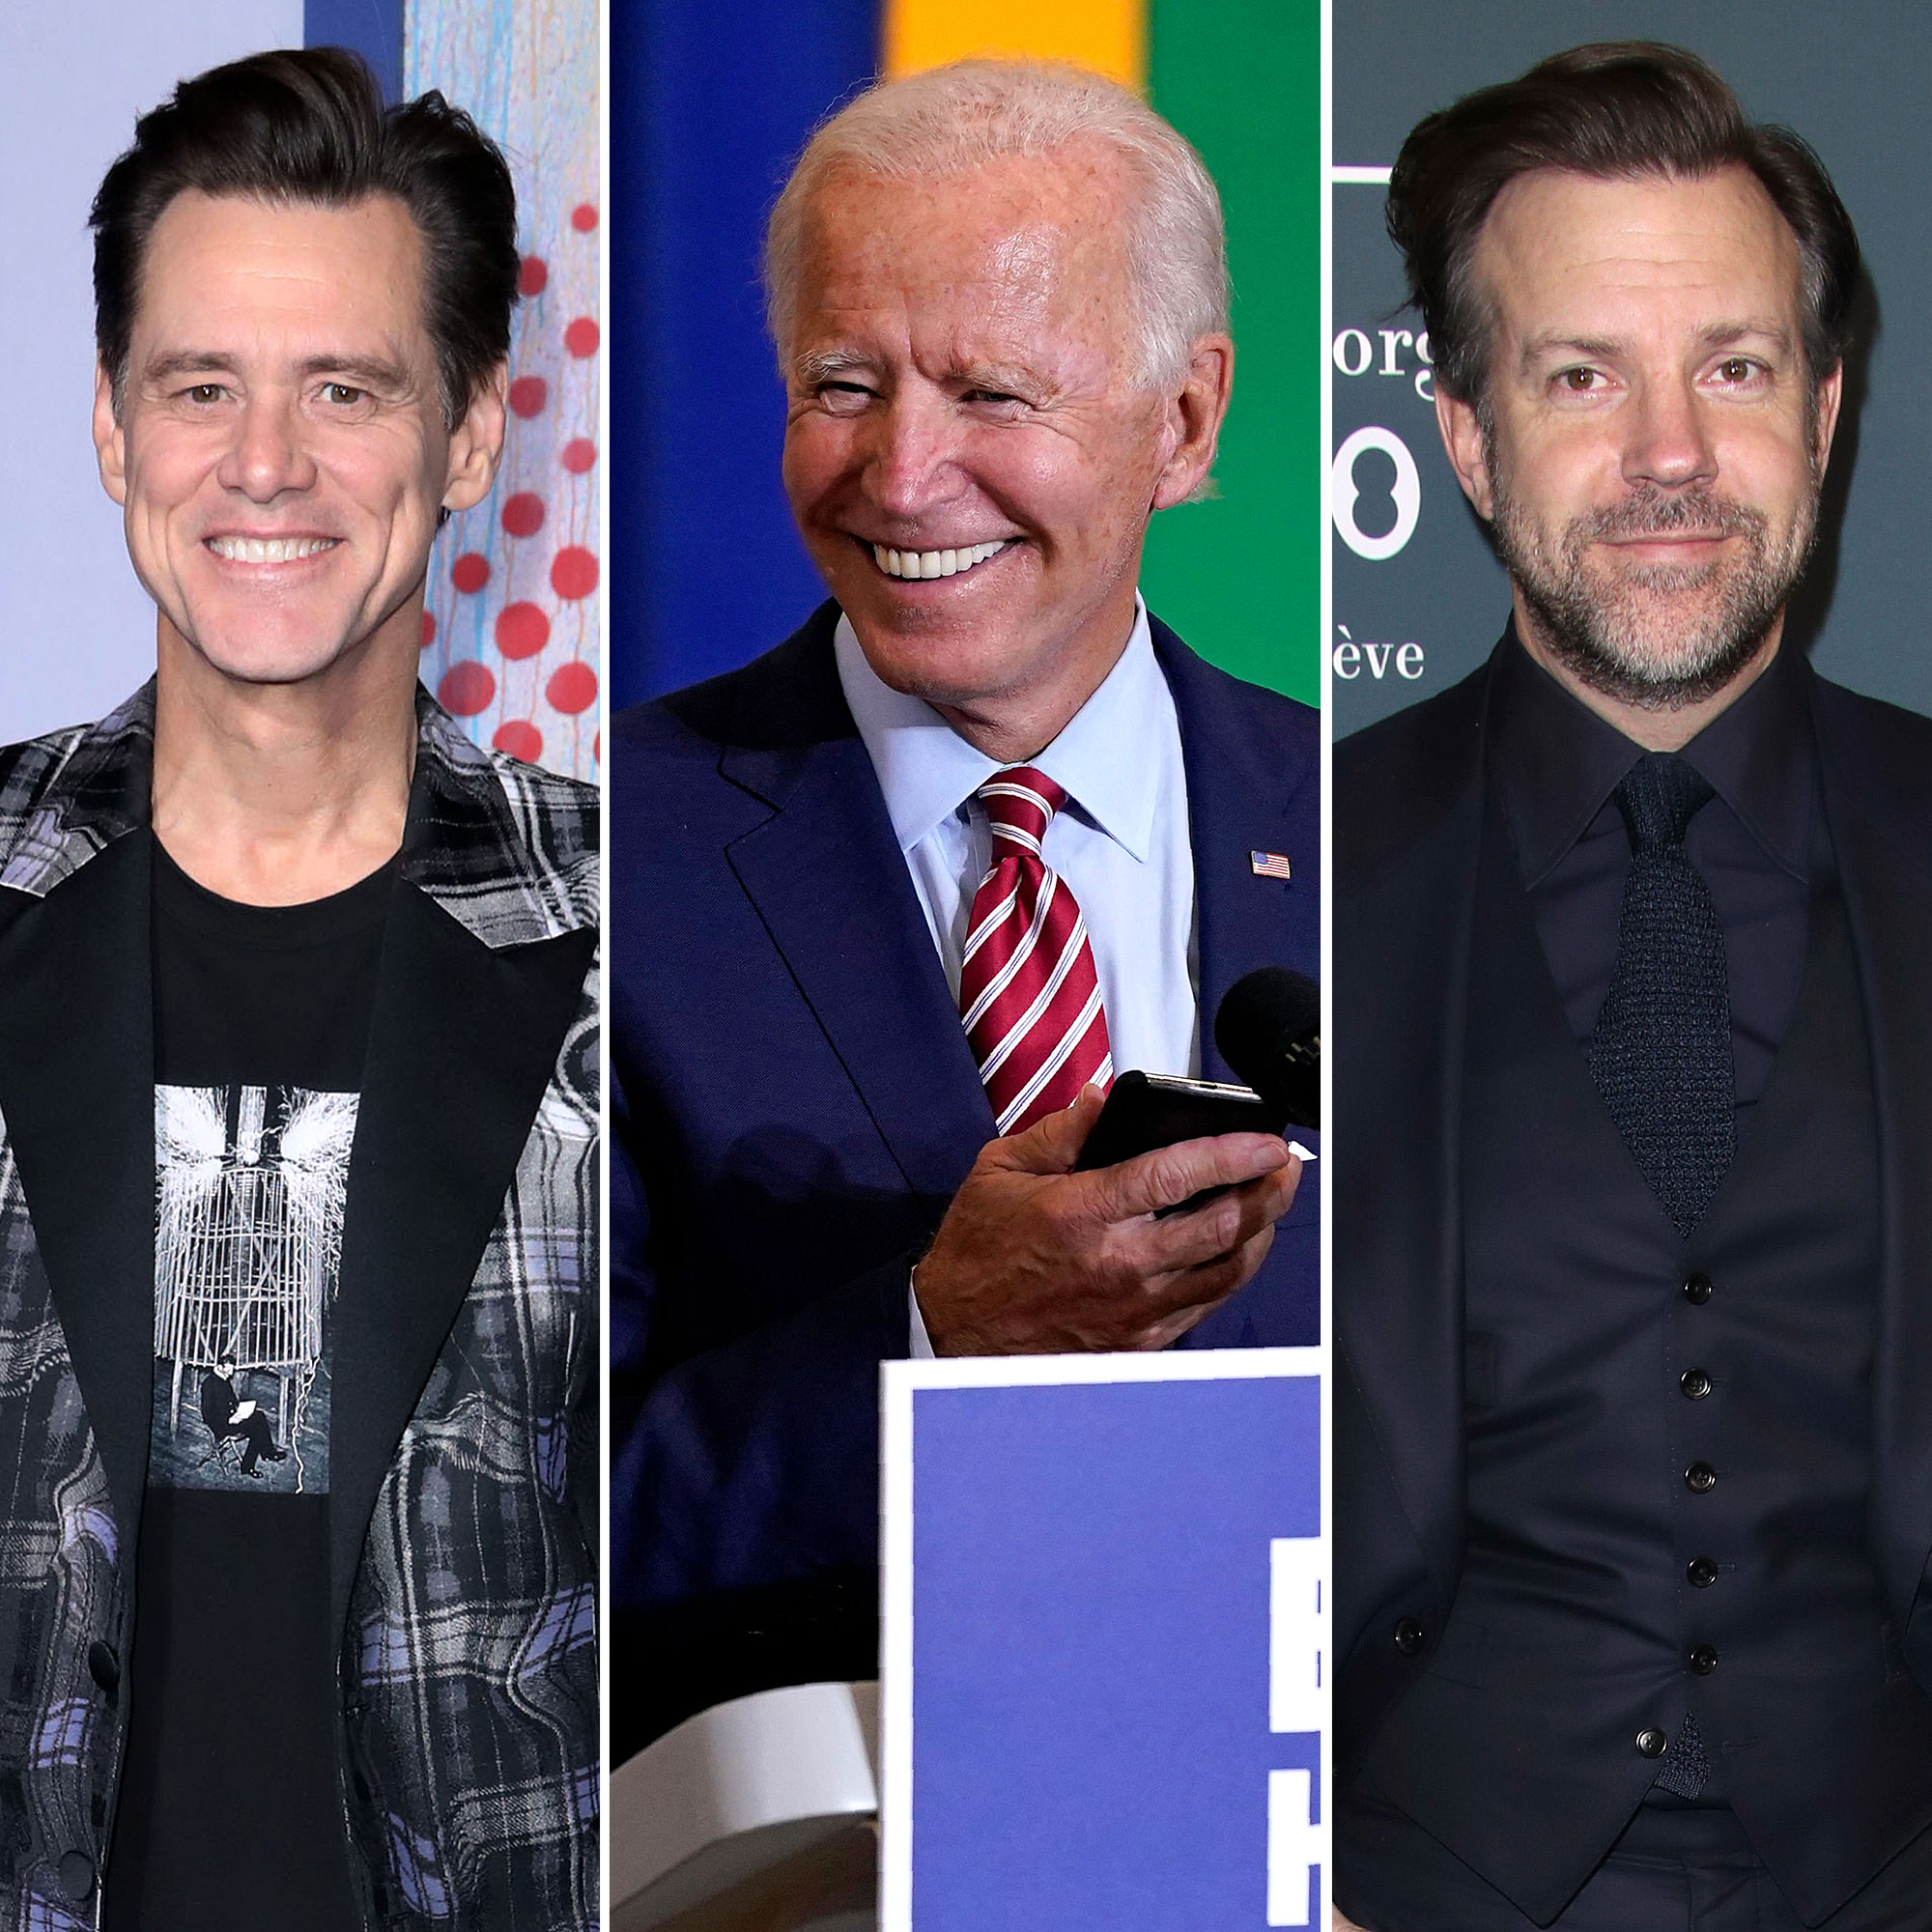 Jim Carrey to Replace Jason as Joe Biden on 'SNL'